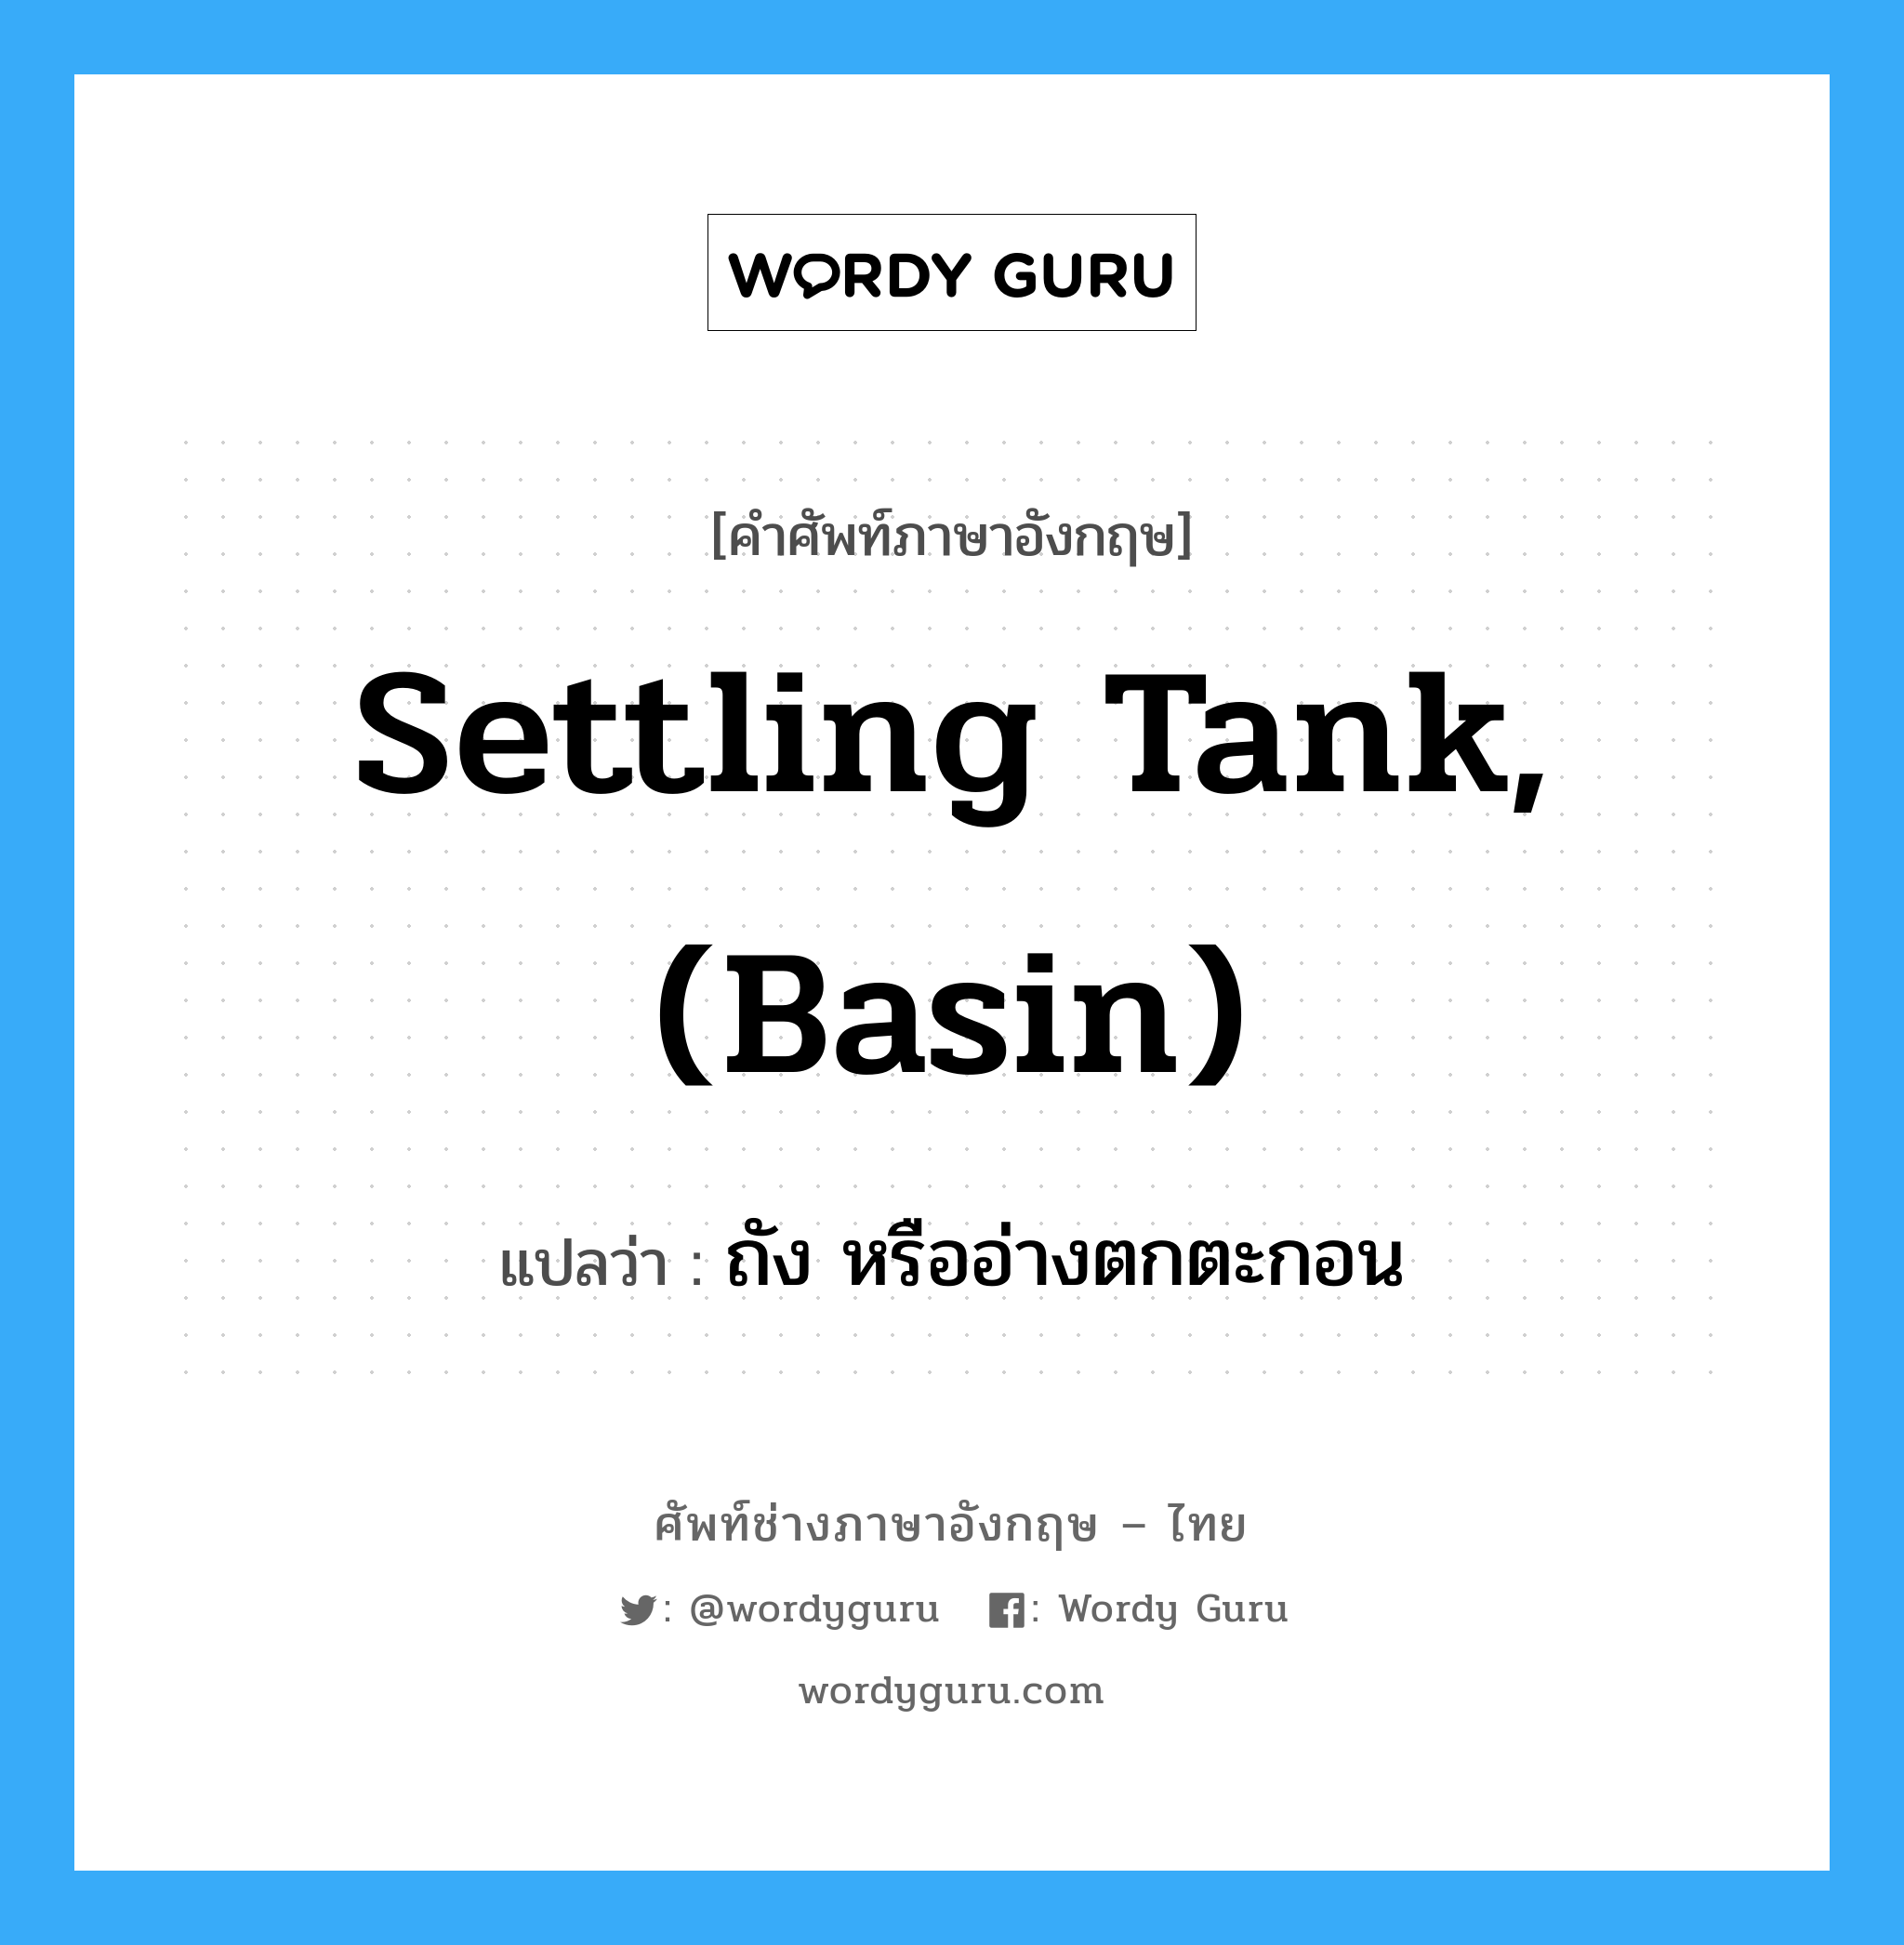 settling tank, (basin) แปลว่า?, คำศัพท์ช่างภาษาอังกฤษ - ไทย settling tank, (basin) คำศัพท์ภาษาอังกฤษ settling tank, (basin) แปลว่า ถัง หรืออ่างตกตะกอน